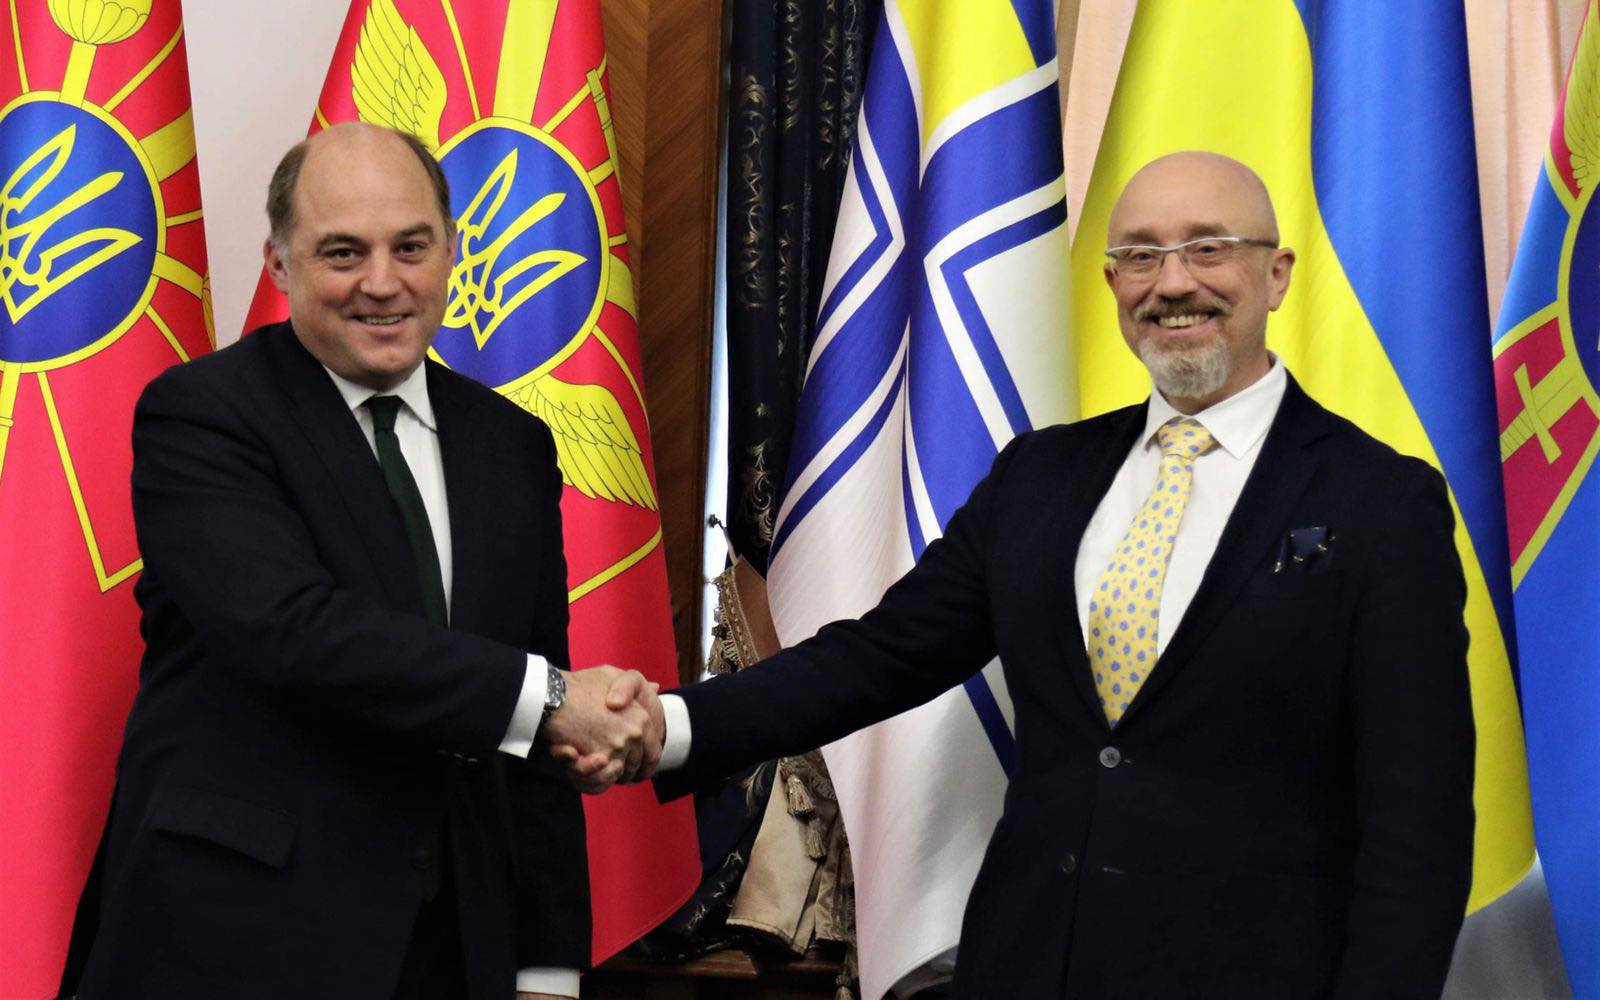 Міністри оборони України й Британії заявили про безпекове співробітництво